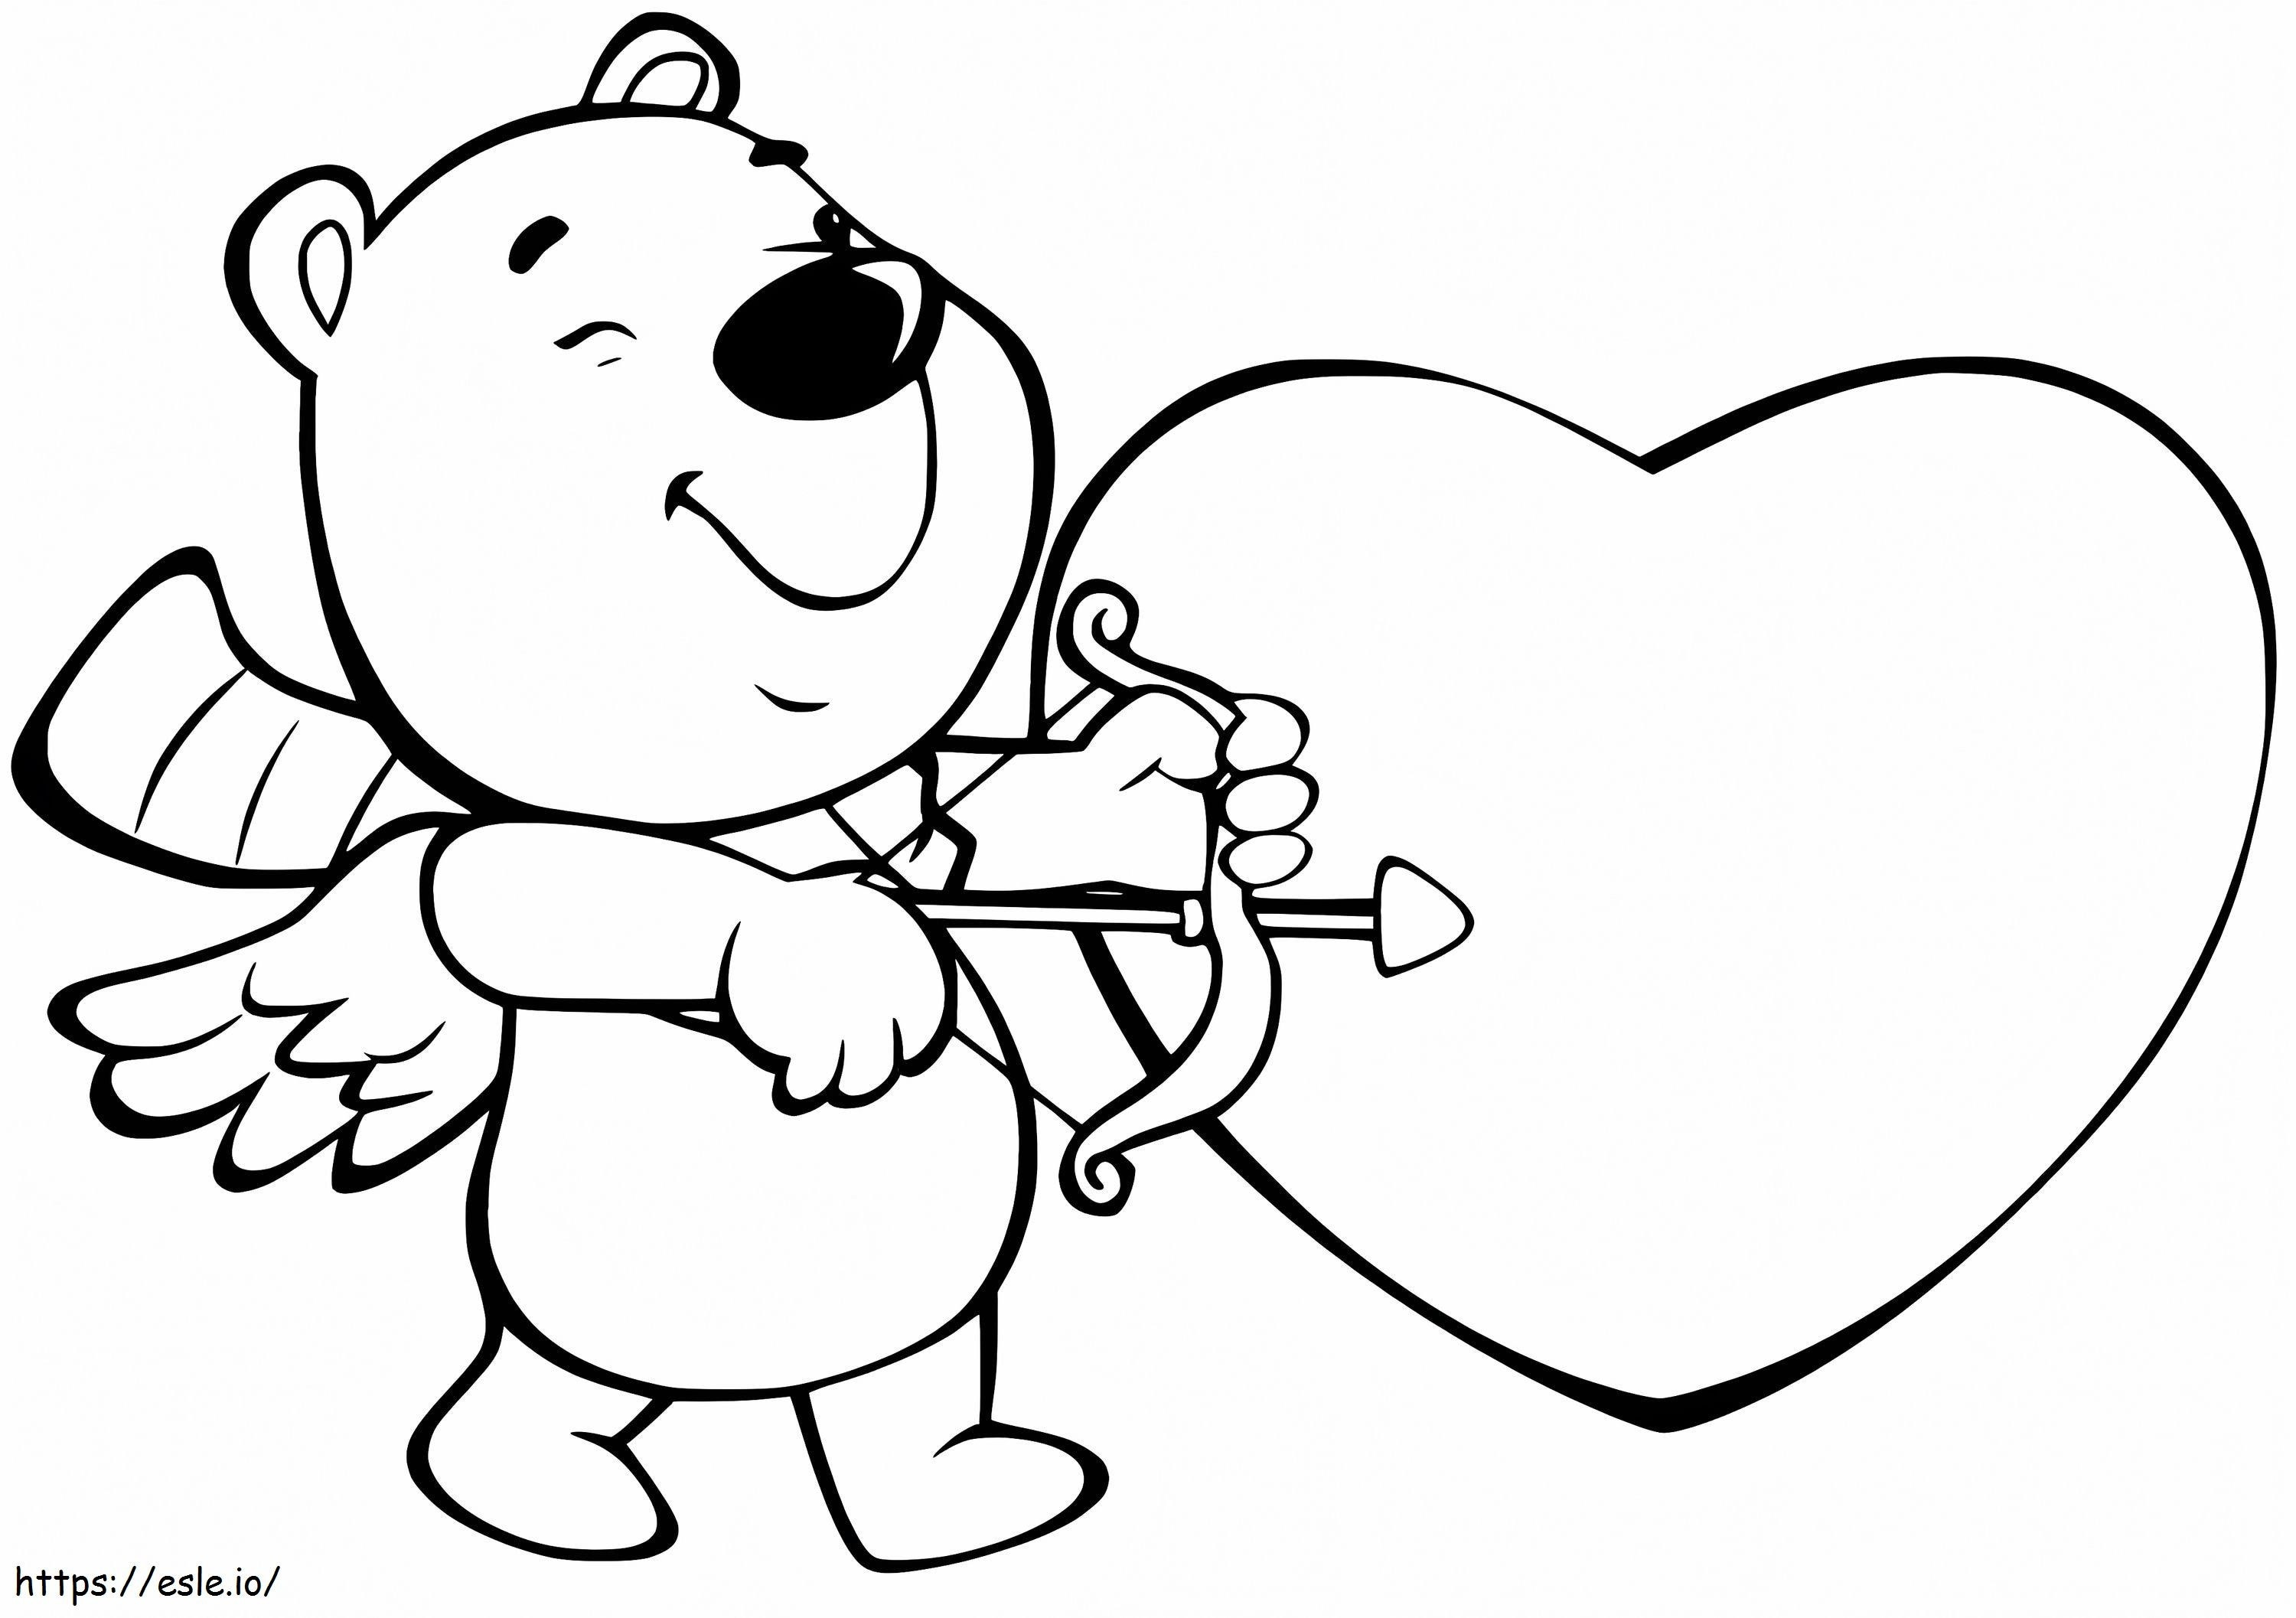 Urso Cupido para colorir